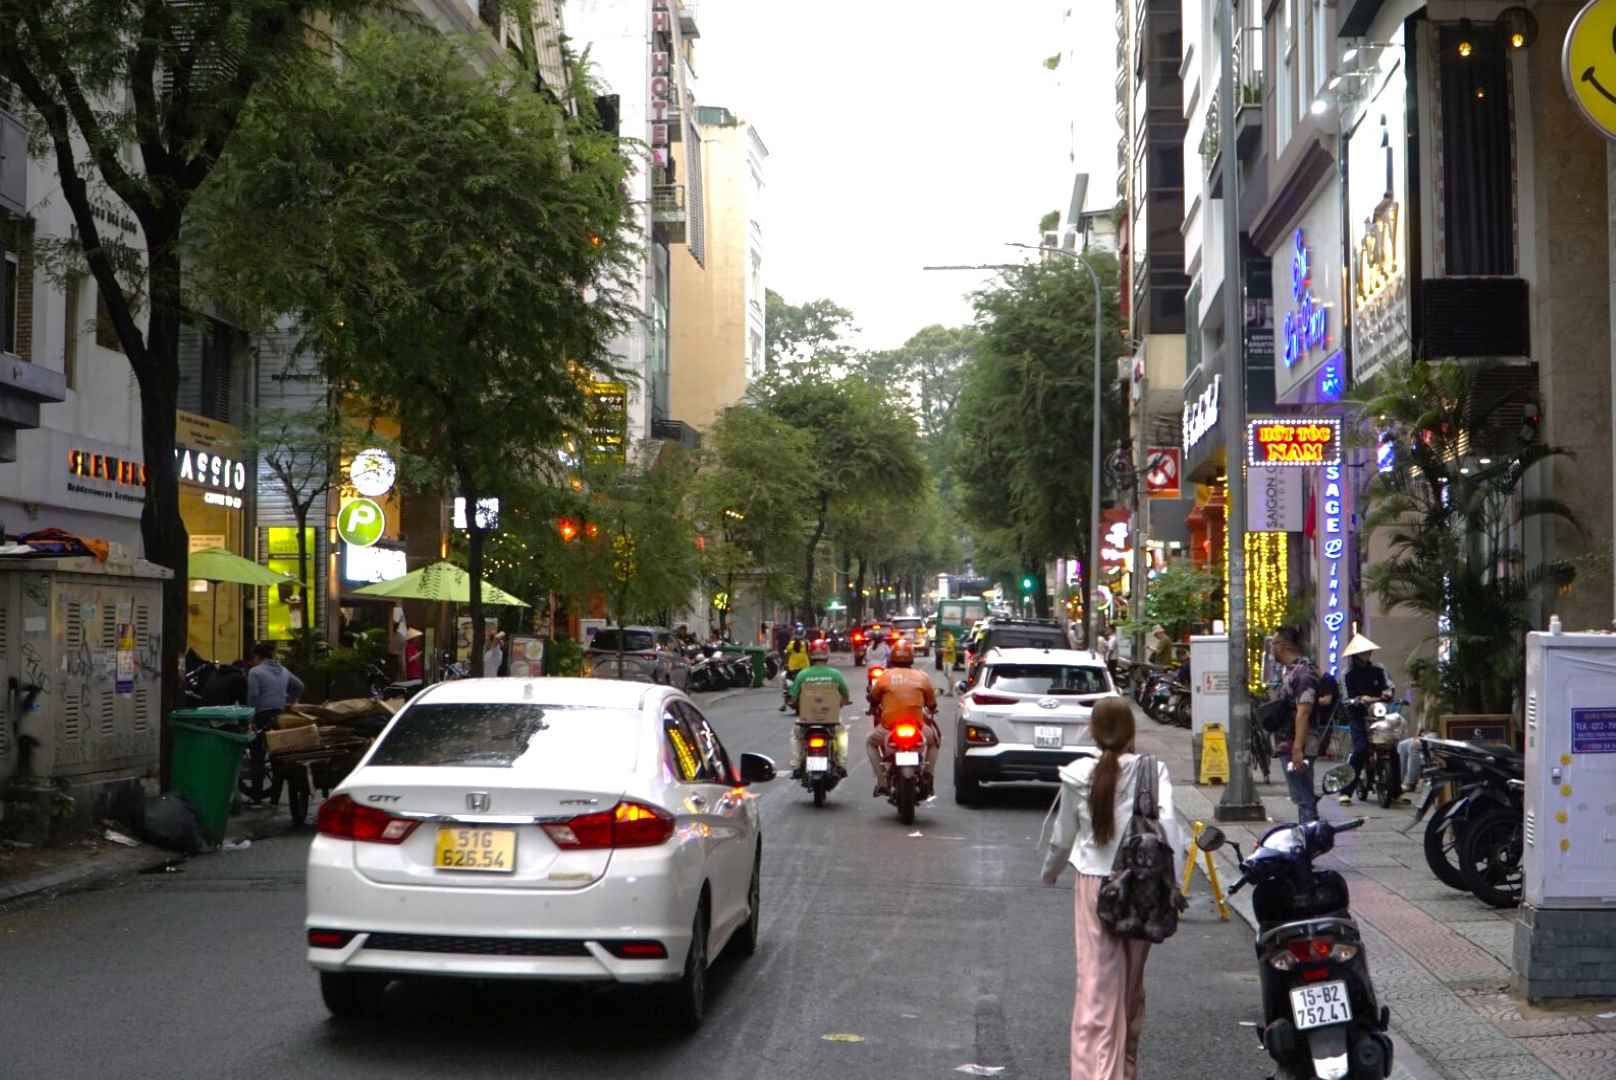 Hiện tại dọc tuyến đường Thái Văn Lung, tình trạng chiếm dụng lòng đường, vỉa hè diễn ra tràn lan. Nhiều tài xế cho xe đậu trên đường cản trở giao thông,  thiếu không gian cho người đi bộ.